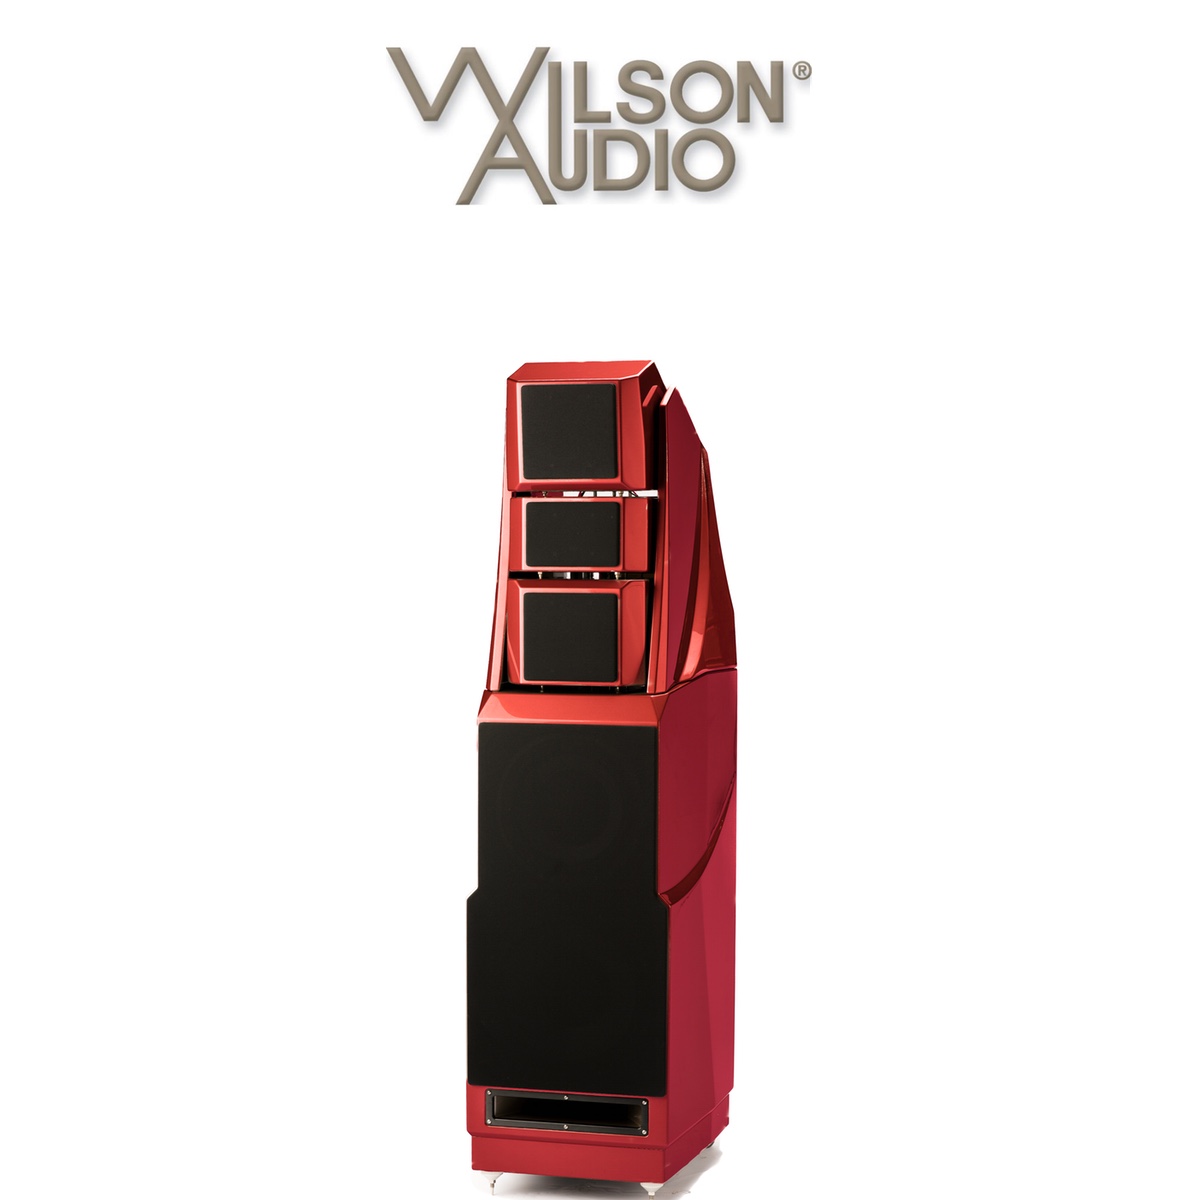 Wilson Audio.jpg